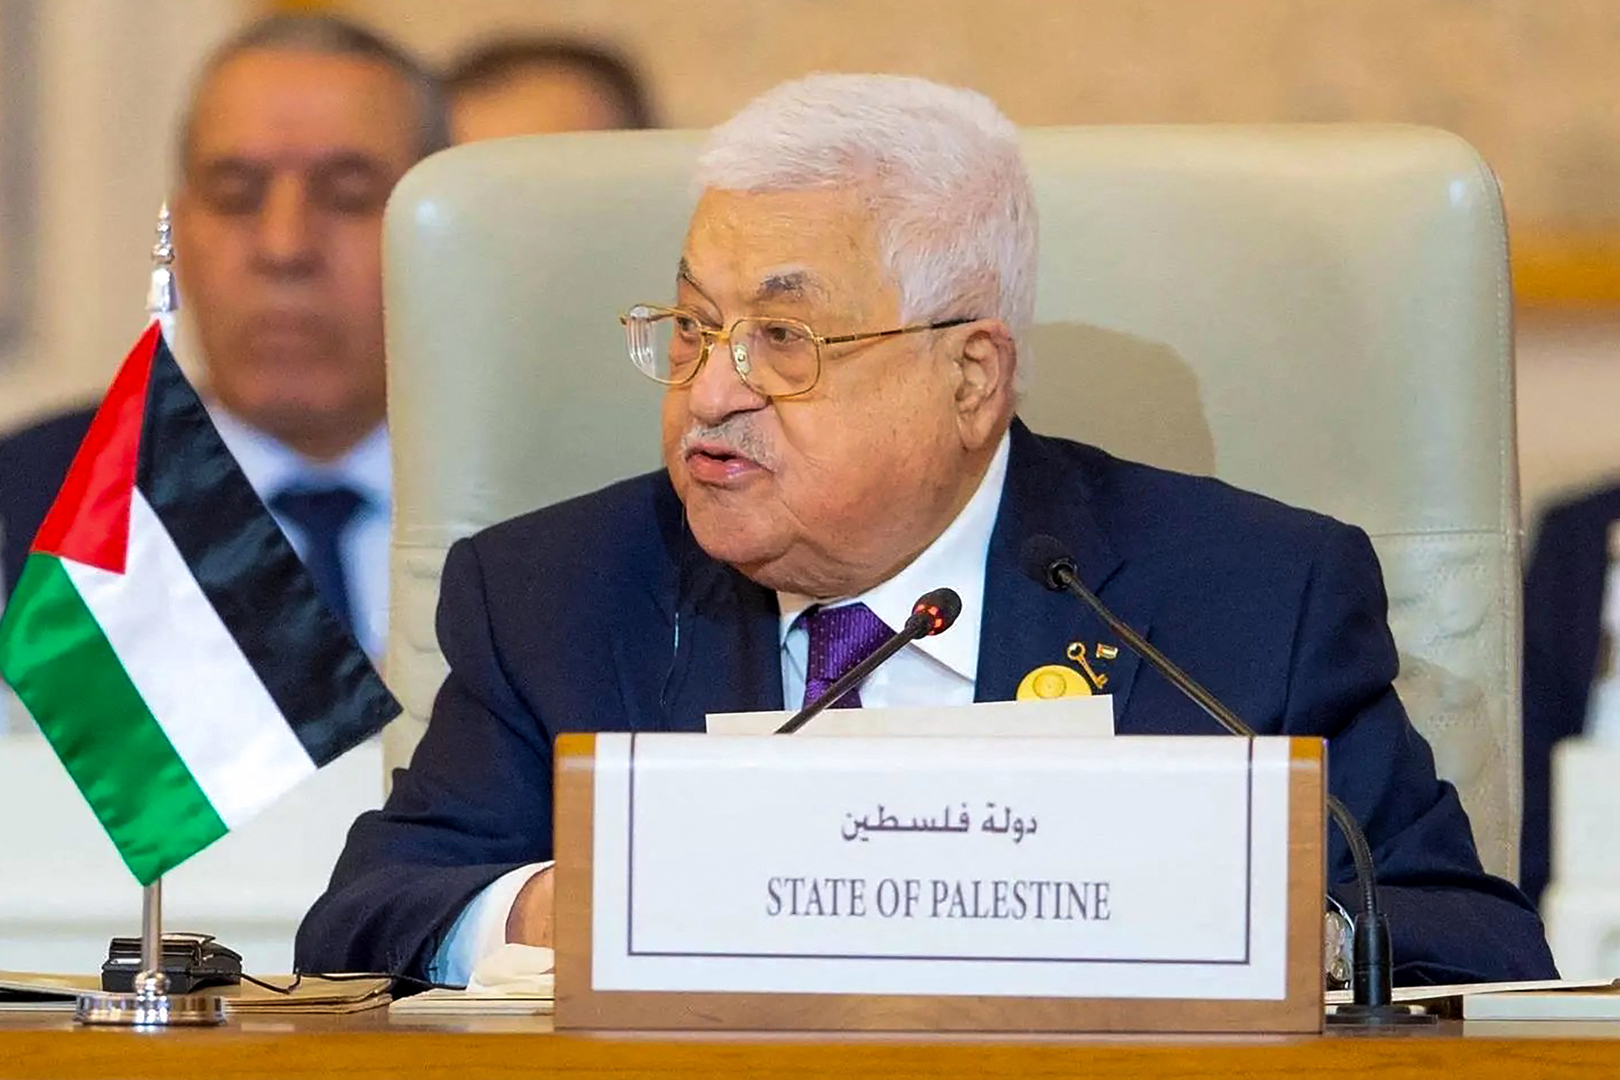 محمود عباس يستقبل وفدا أمريكيا برئاسة منسق شؤون الشرق الأوسط في مجلس الأمن القومي الأمريكي